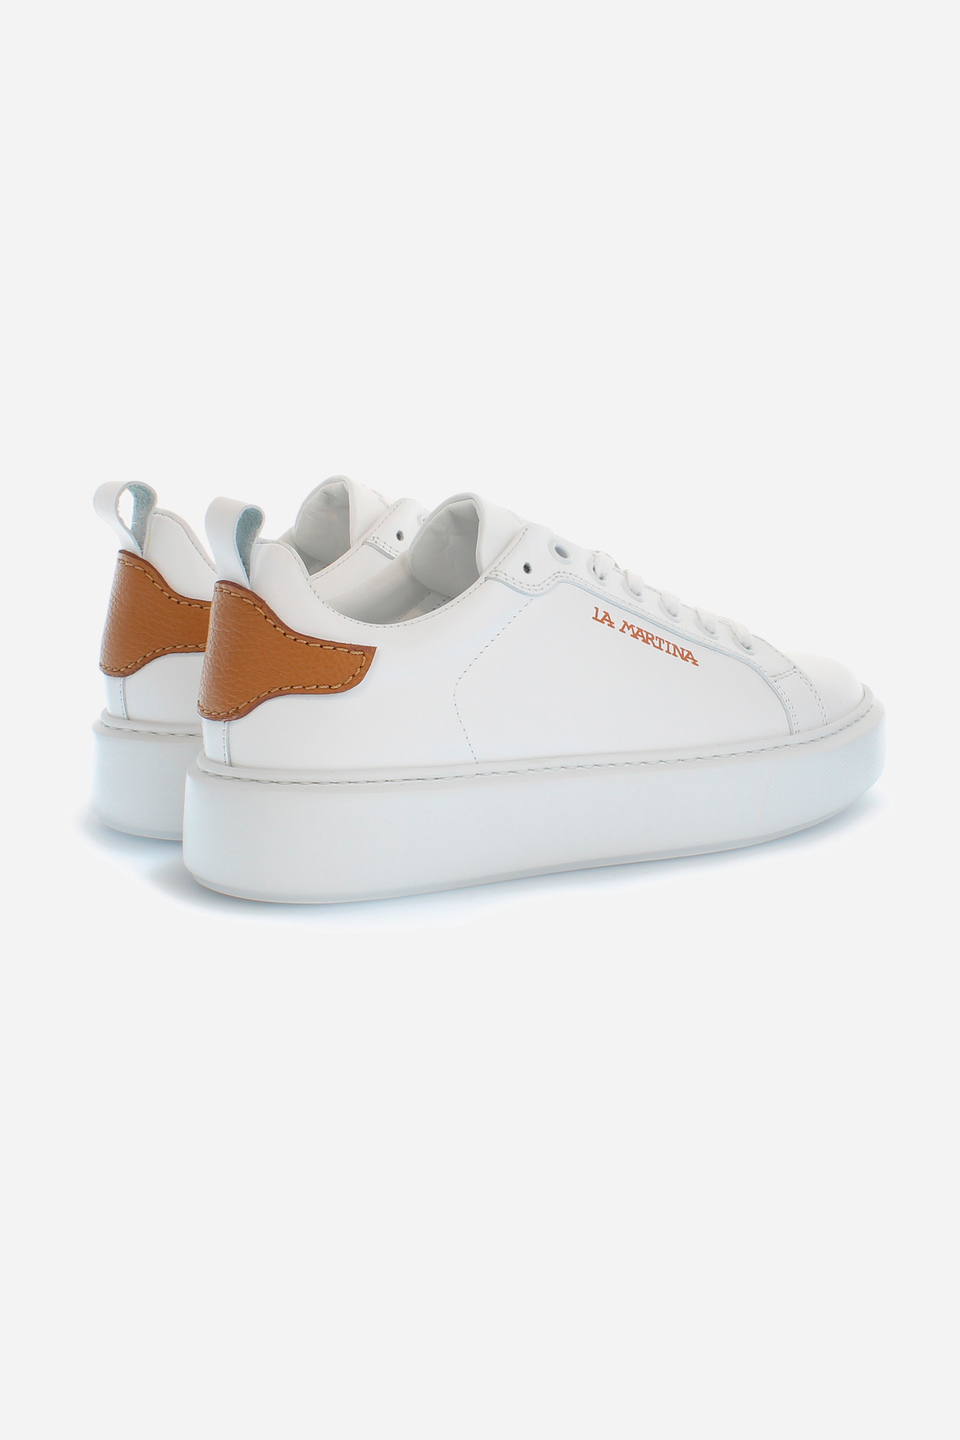 Damen-Sneaker aus Leder | La Martina - Official Online Shop